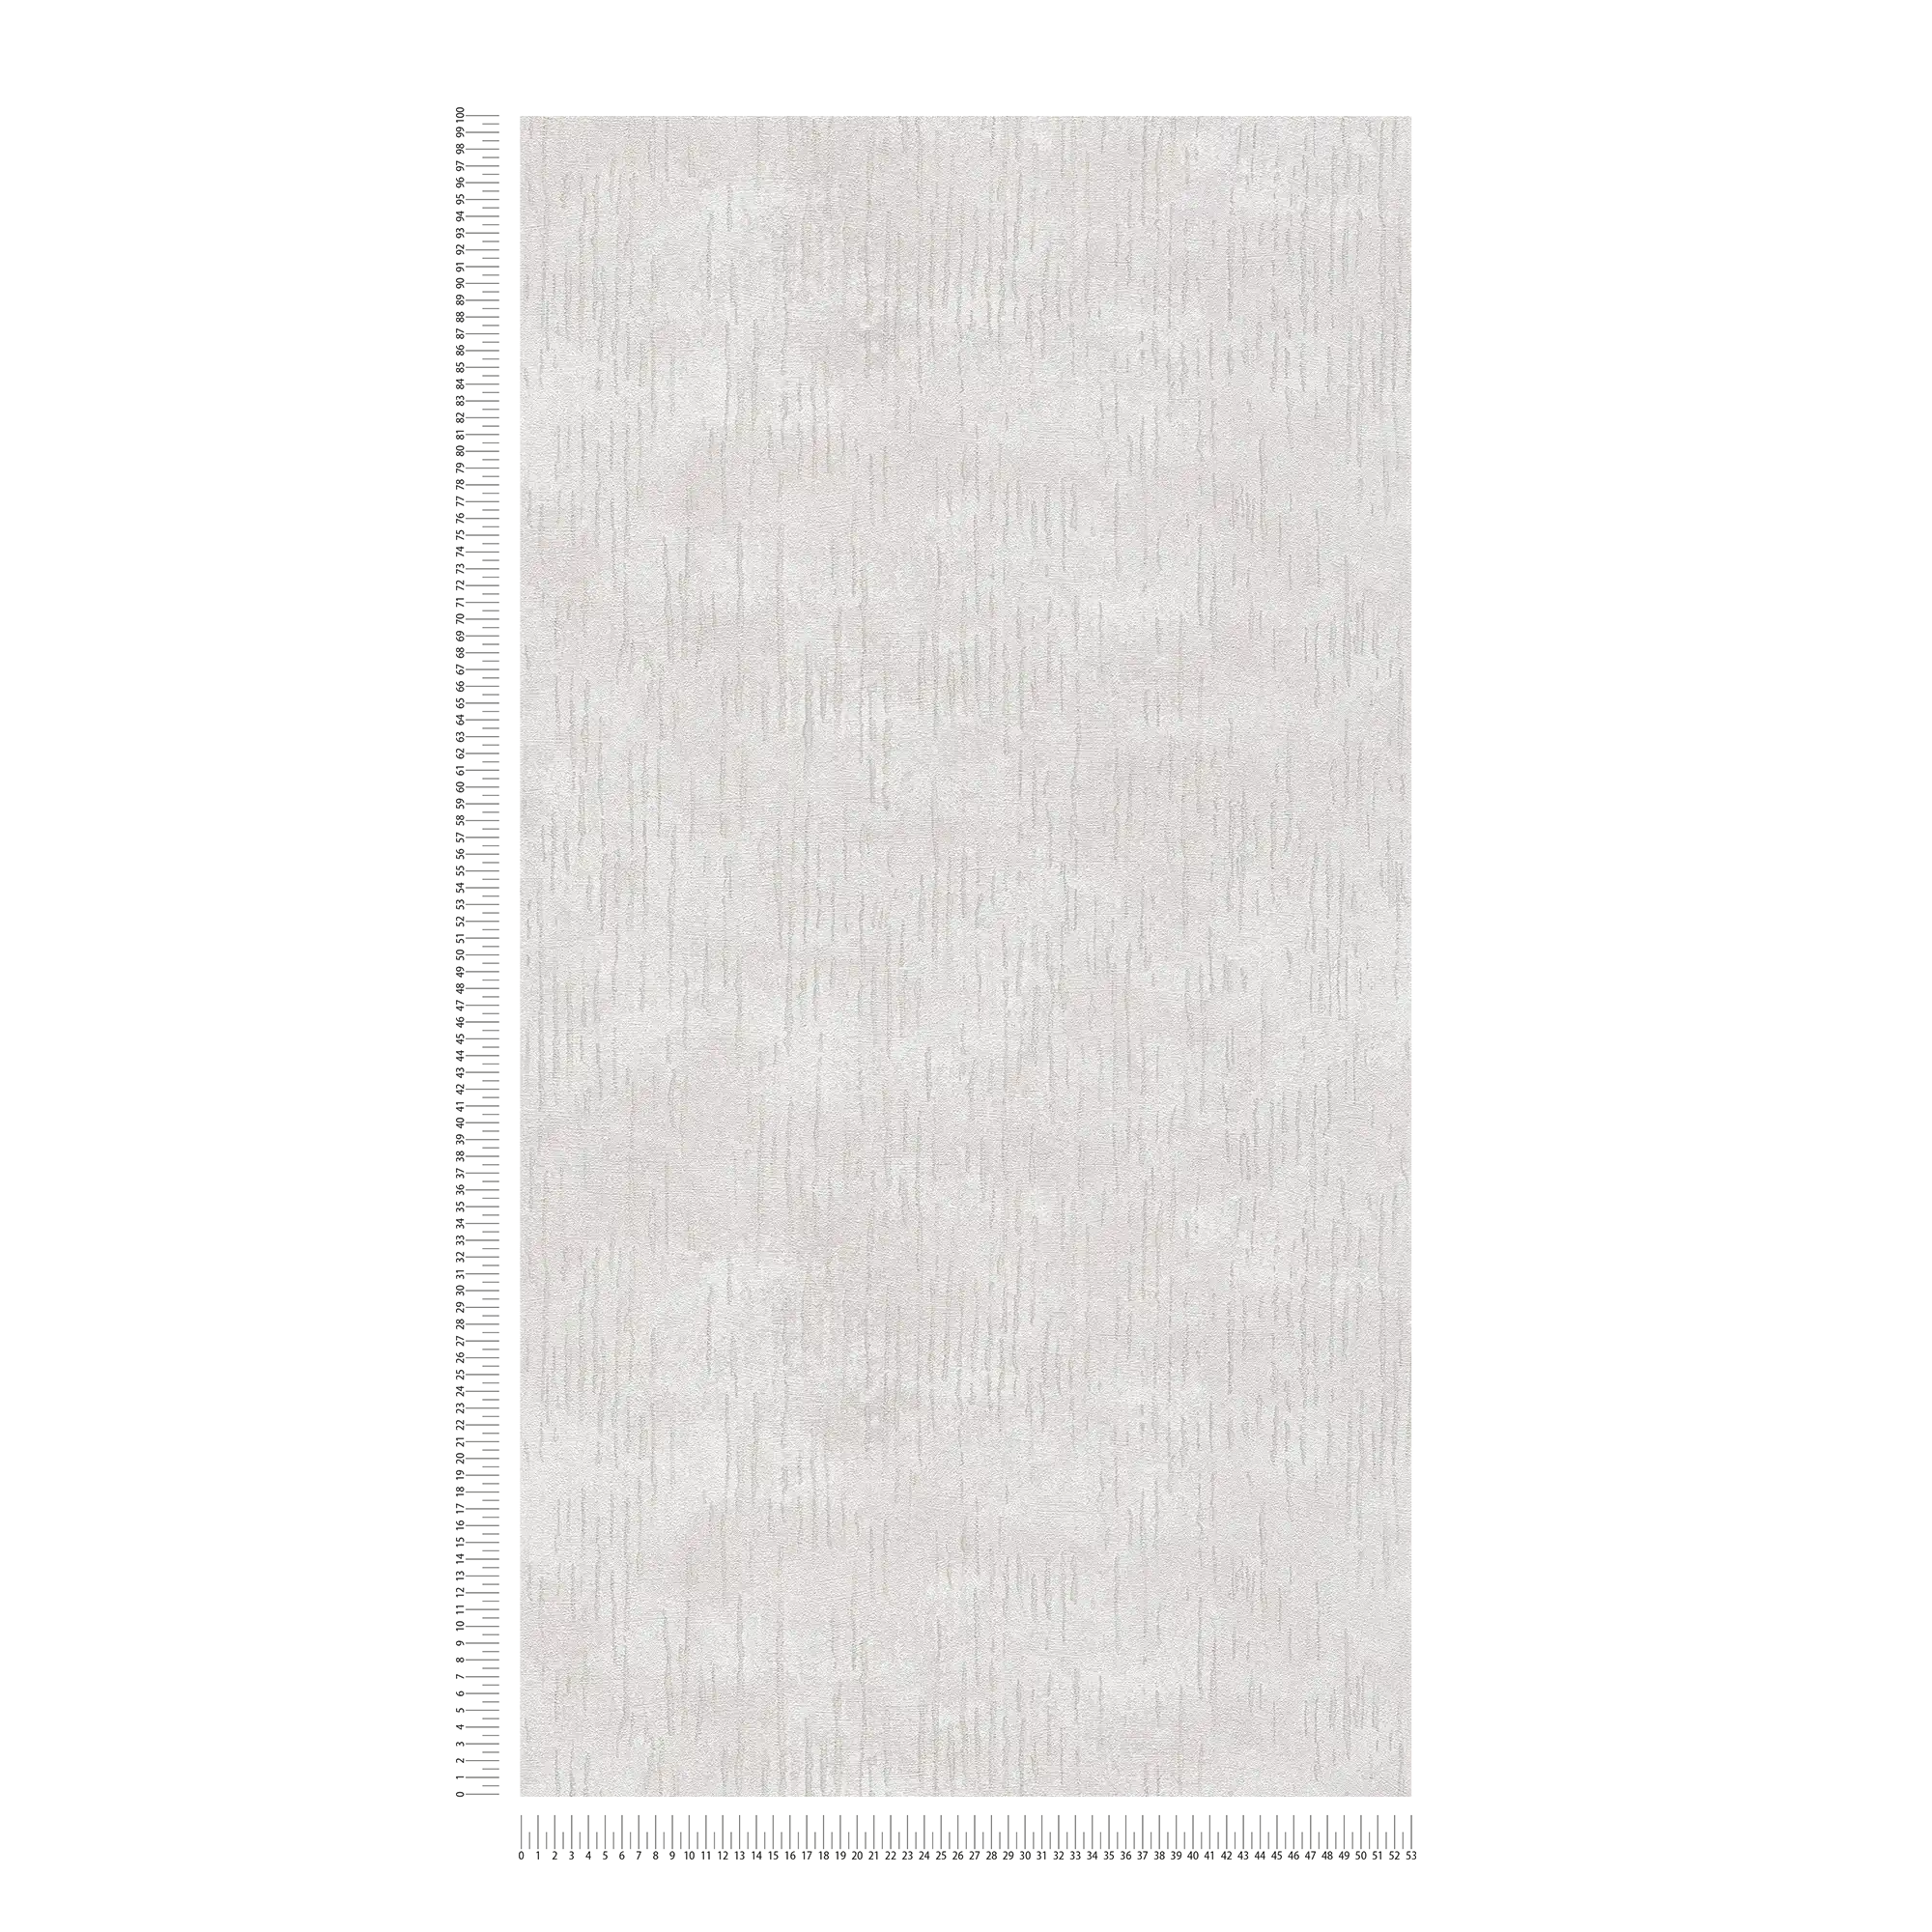             Carta da parati lucida con motivo metallico - beige, crema, metallizzato
        